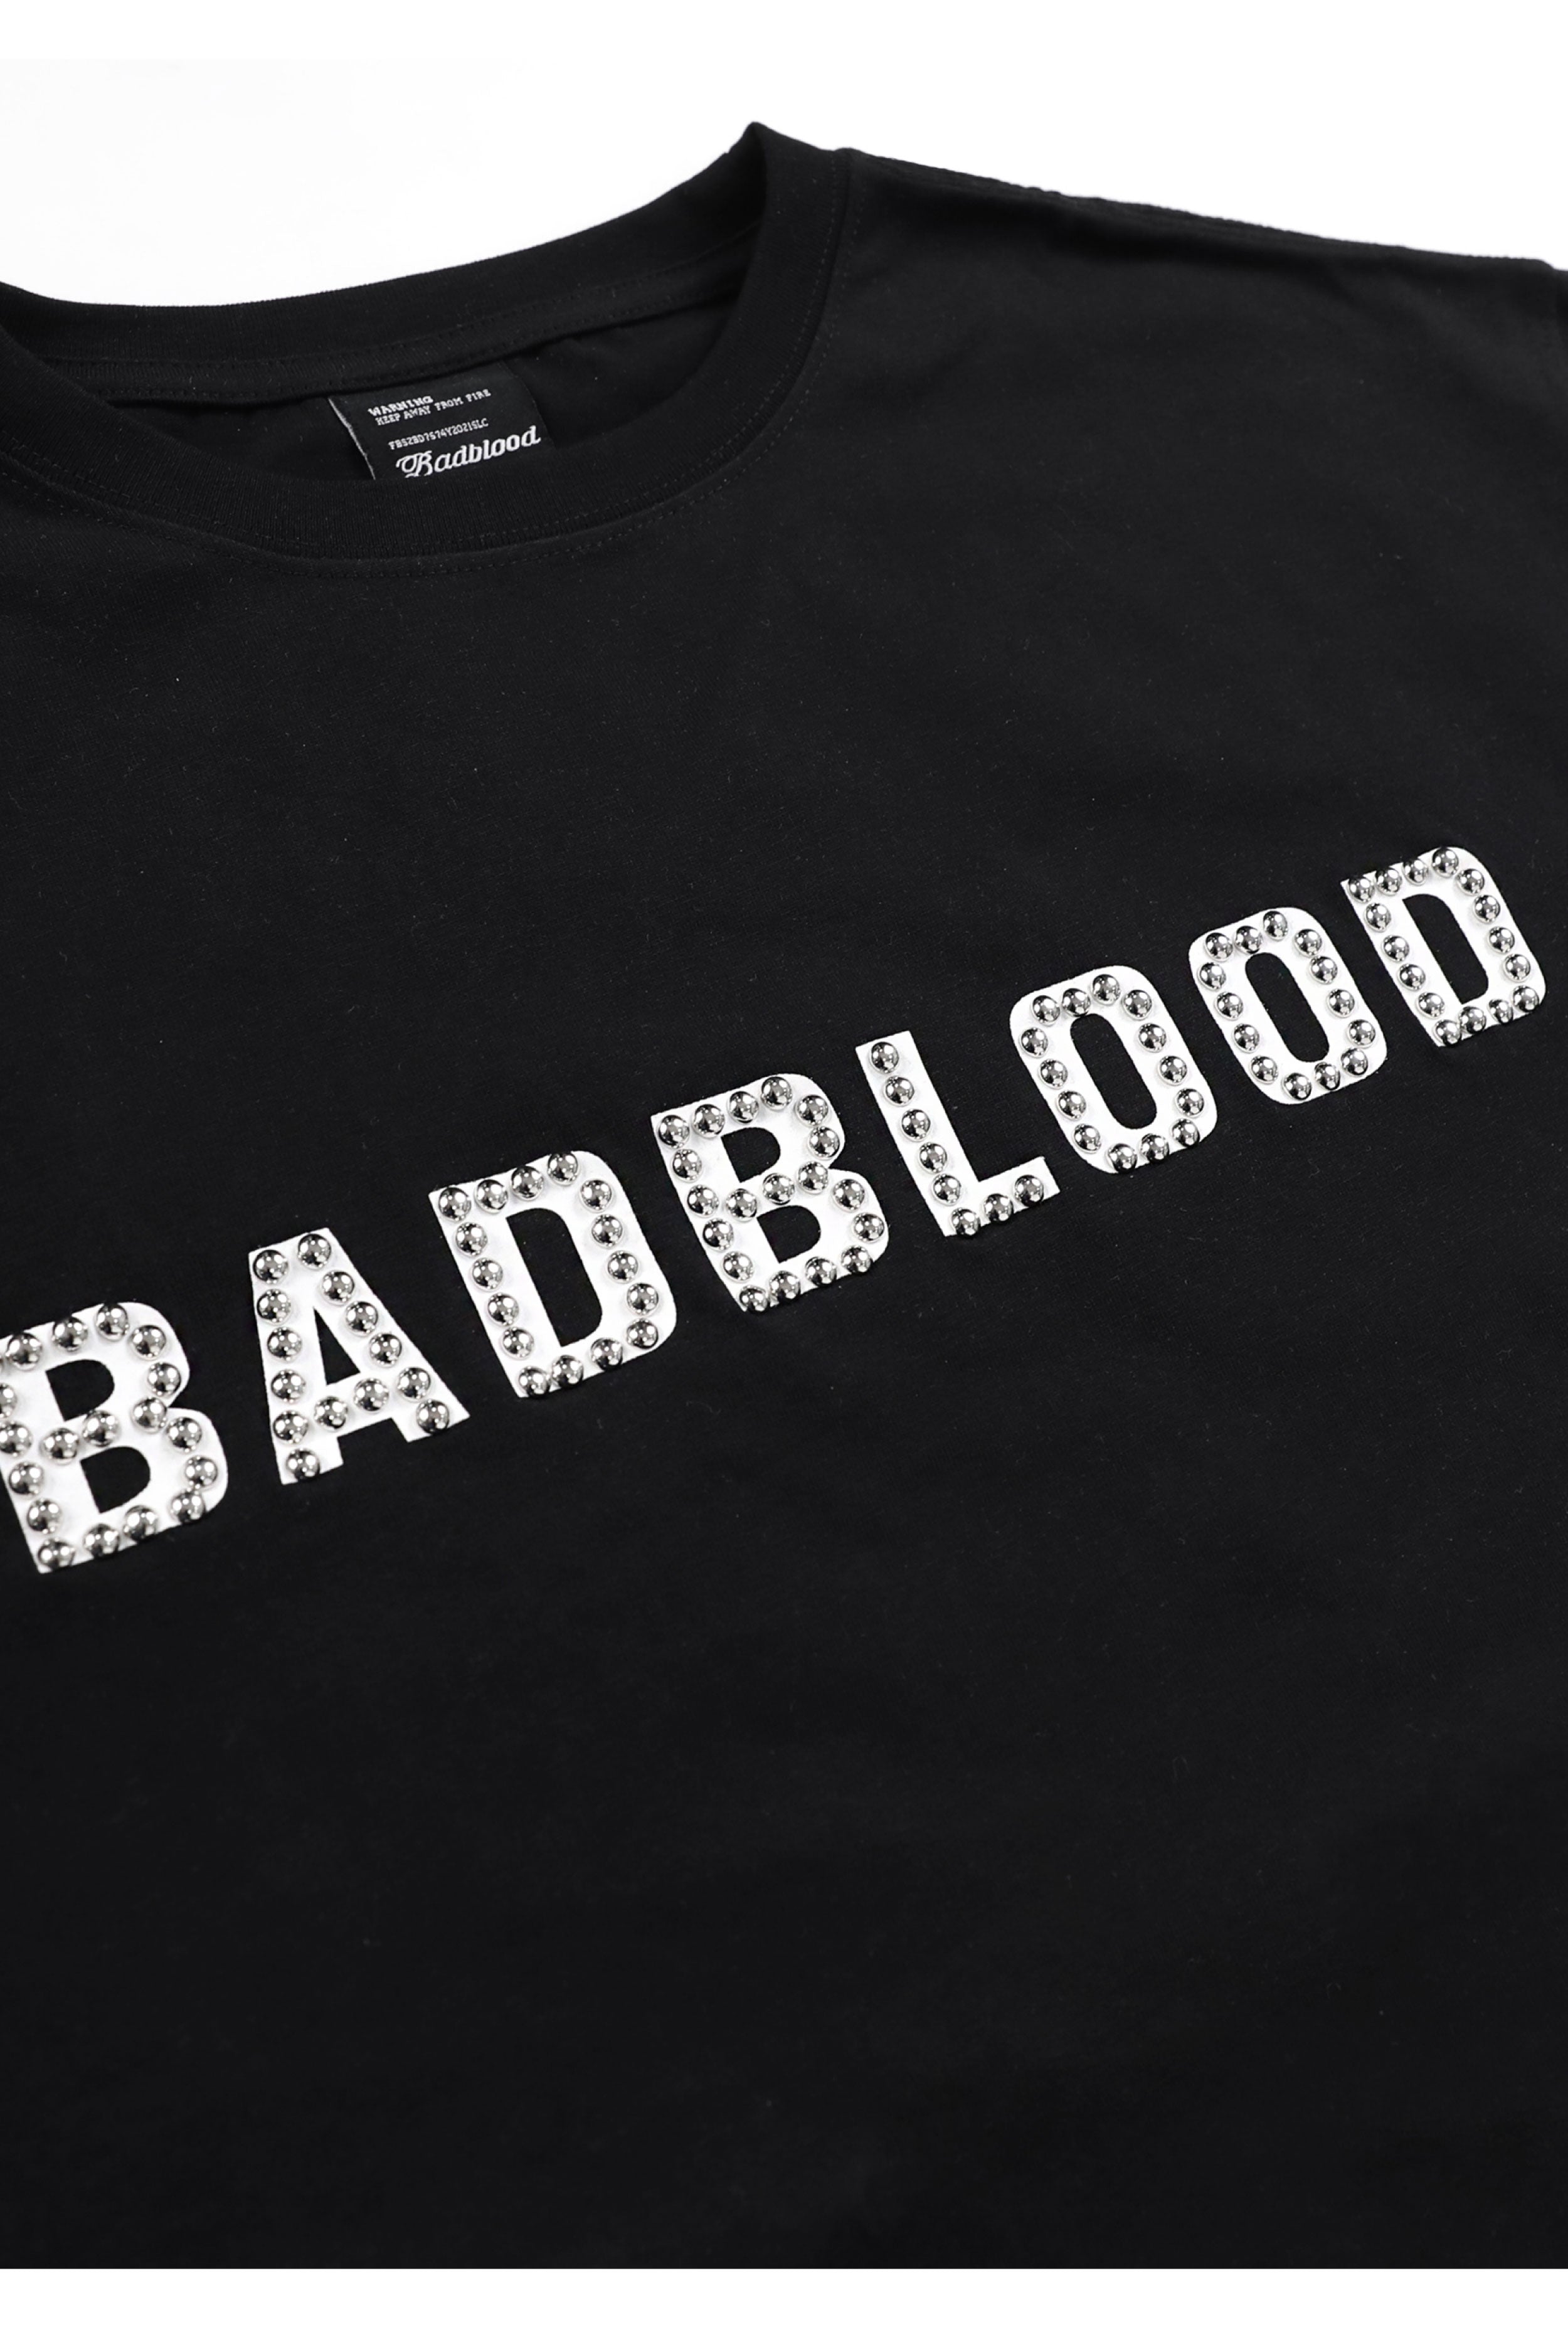 Badblood Studded Logo Short Sleeve Slim Fit Black